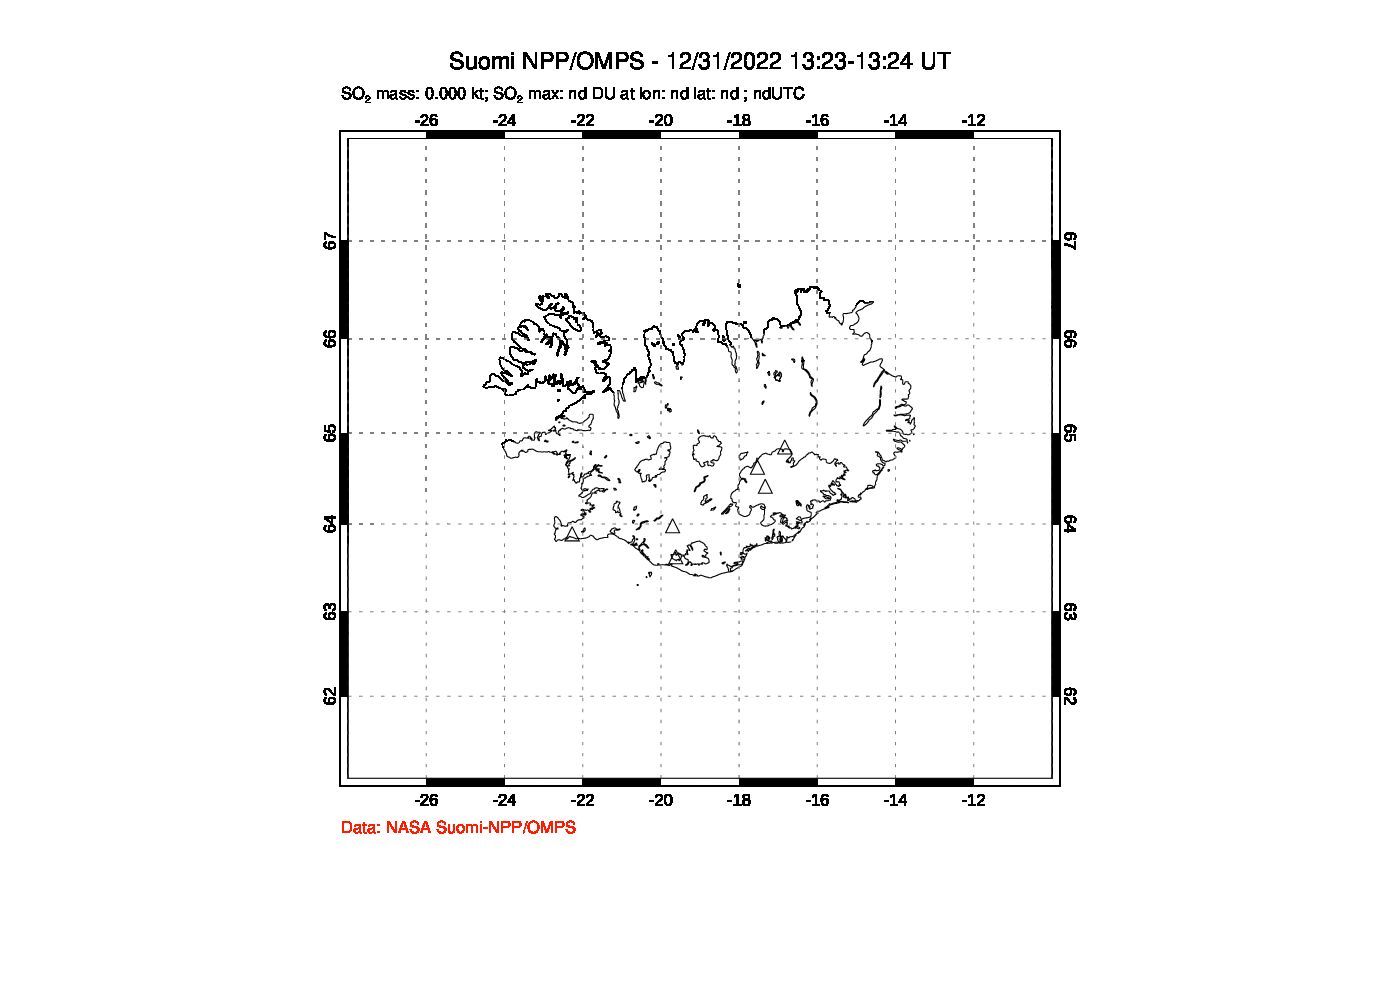 A sulfur dioxide image over Iceland on Dec 31, 2022.